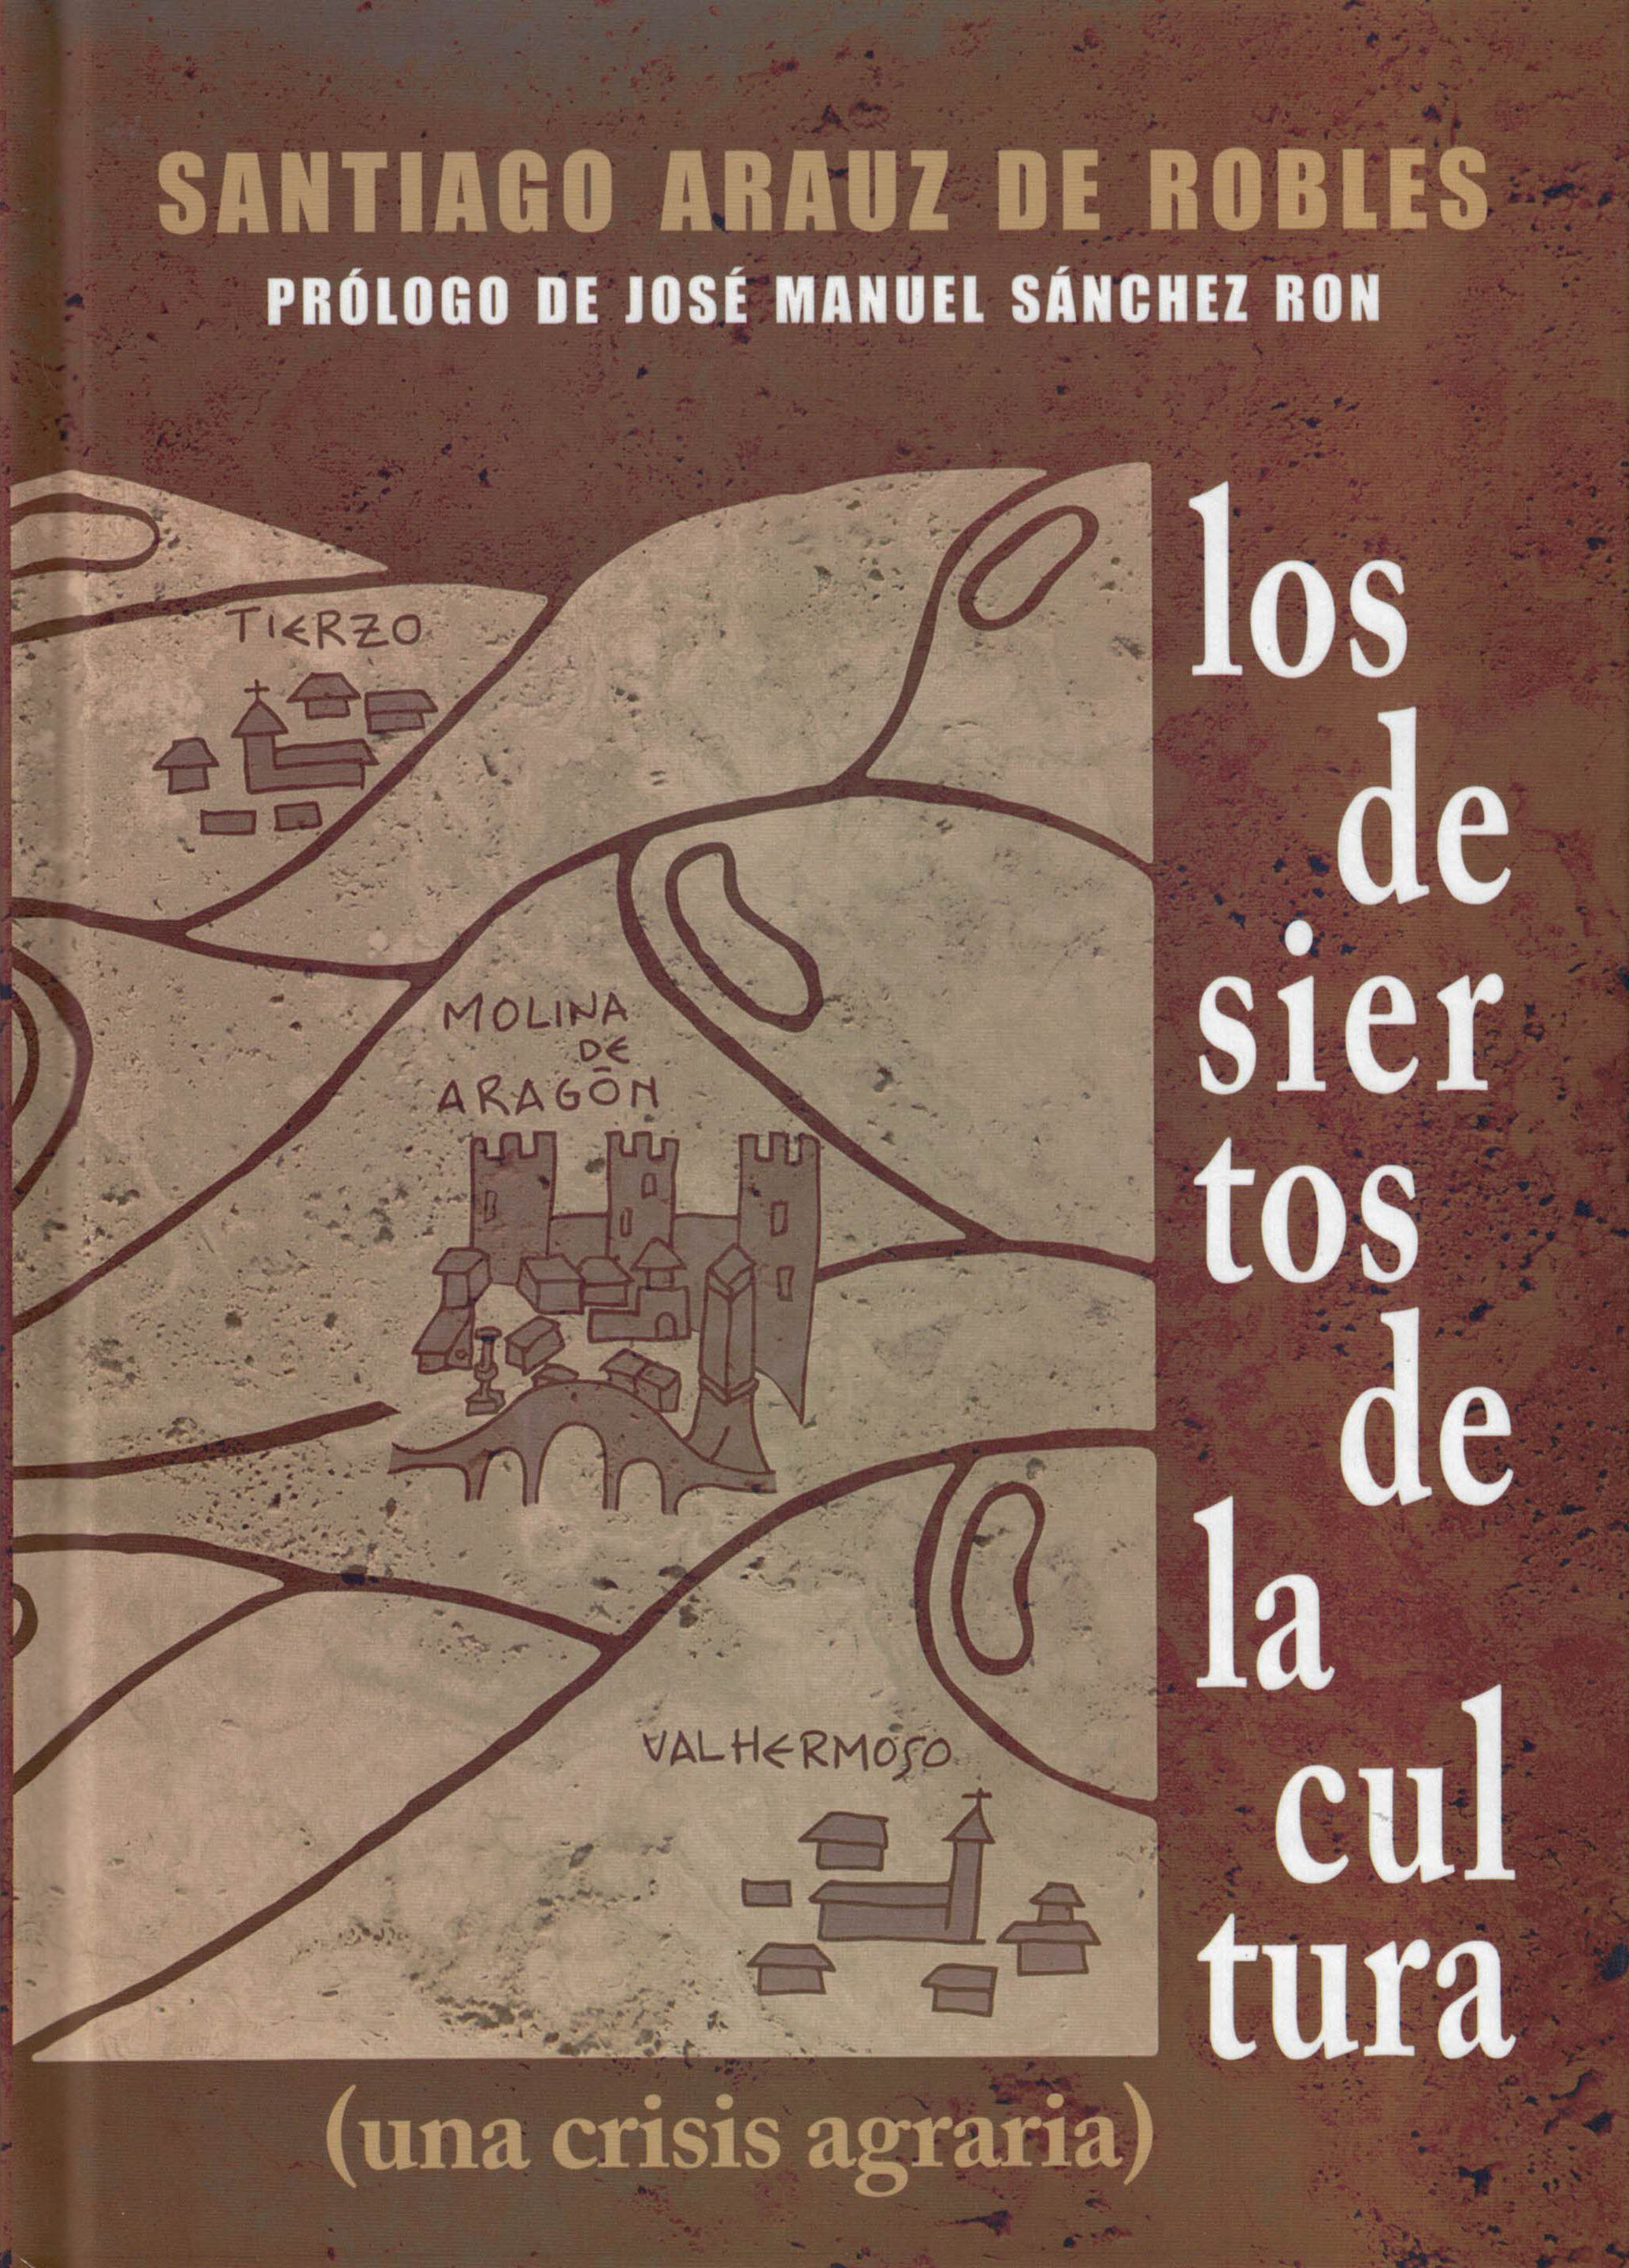 Los desiertos de la cultura (una crisis agraria), Santiago Arauz de Robles